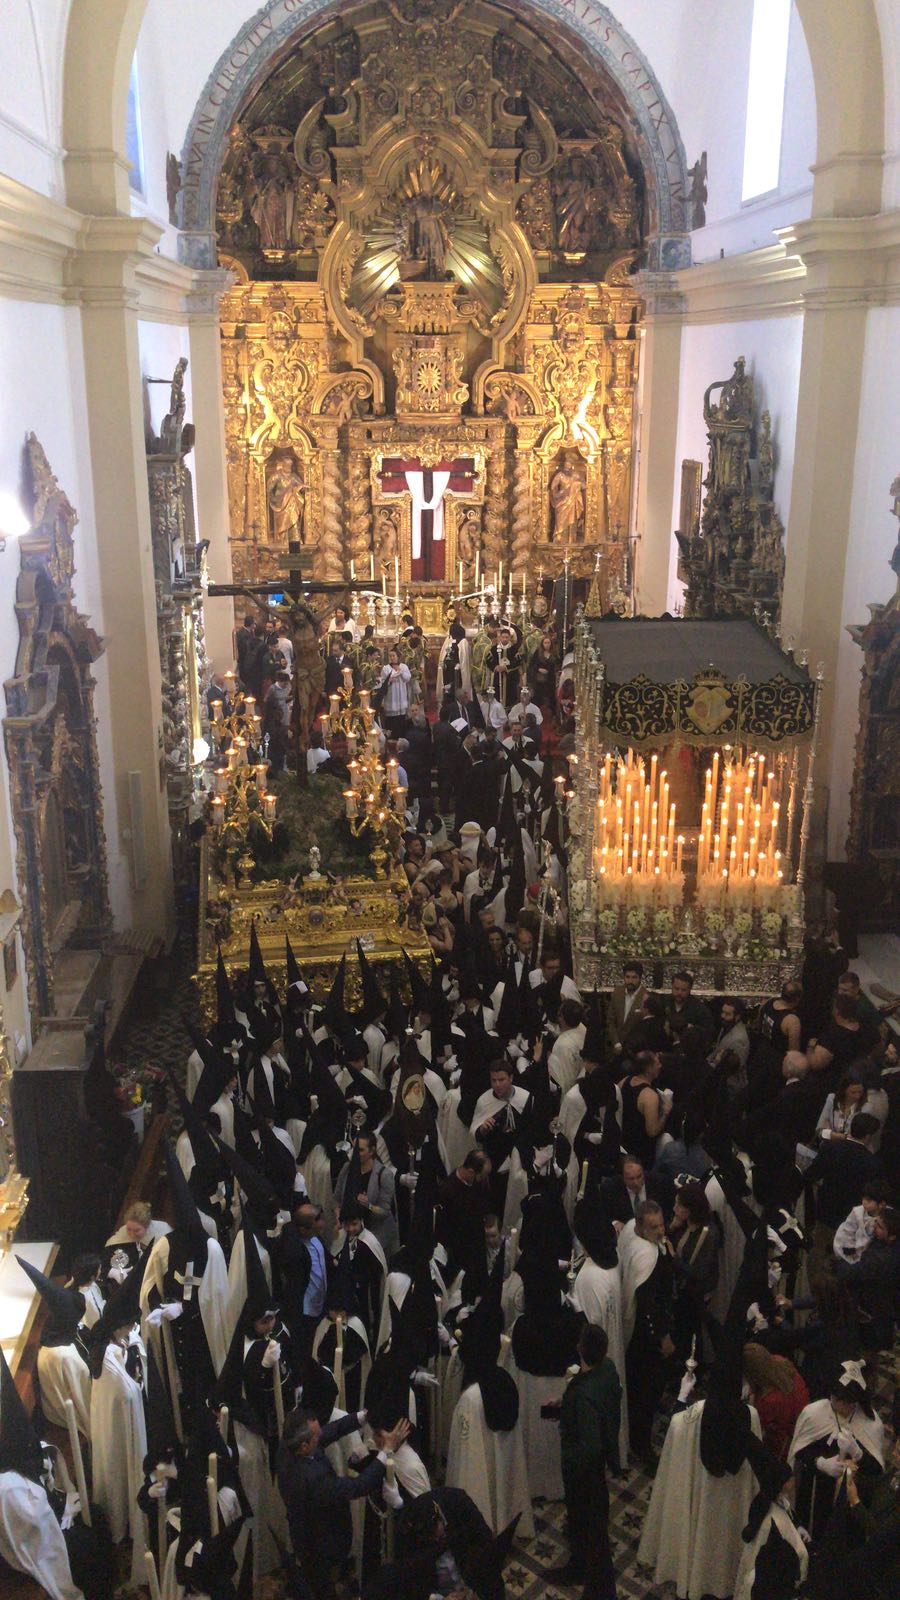 Horarios programados para el Jueves Santo en la Parroquia de San Nicols